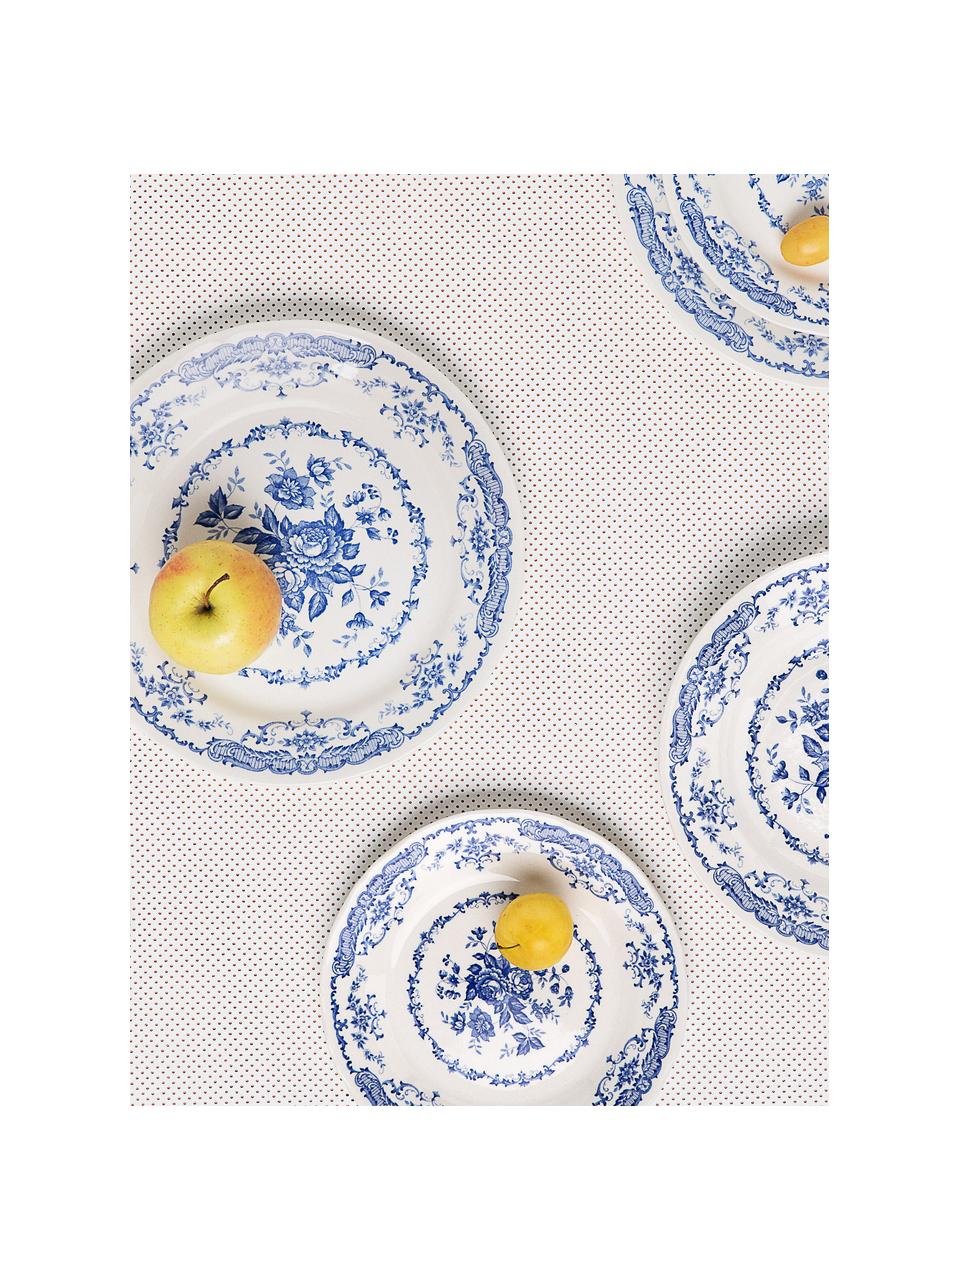 Frühstücksteller Rose mit Blumenmuster in Weiß/Blau, 2 Stück , Keramik, Weiß, Blau, Ø 21 x 1 cm